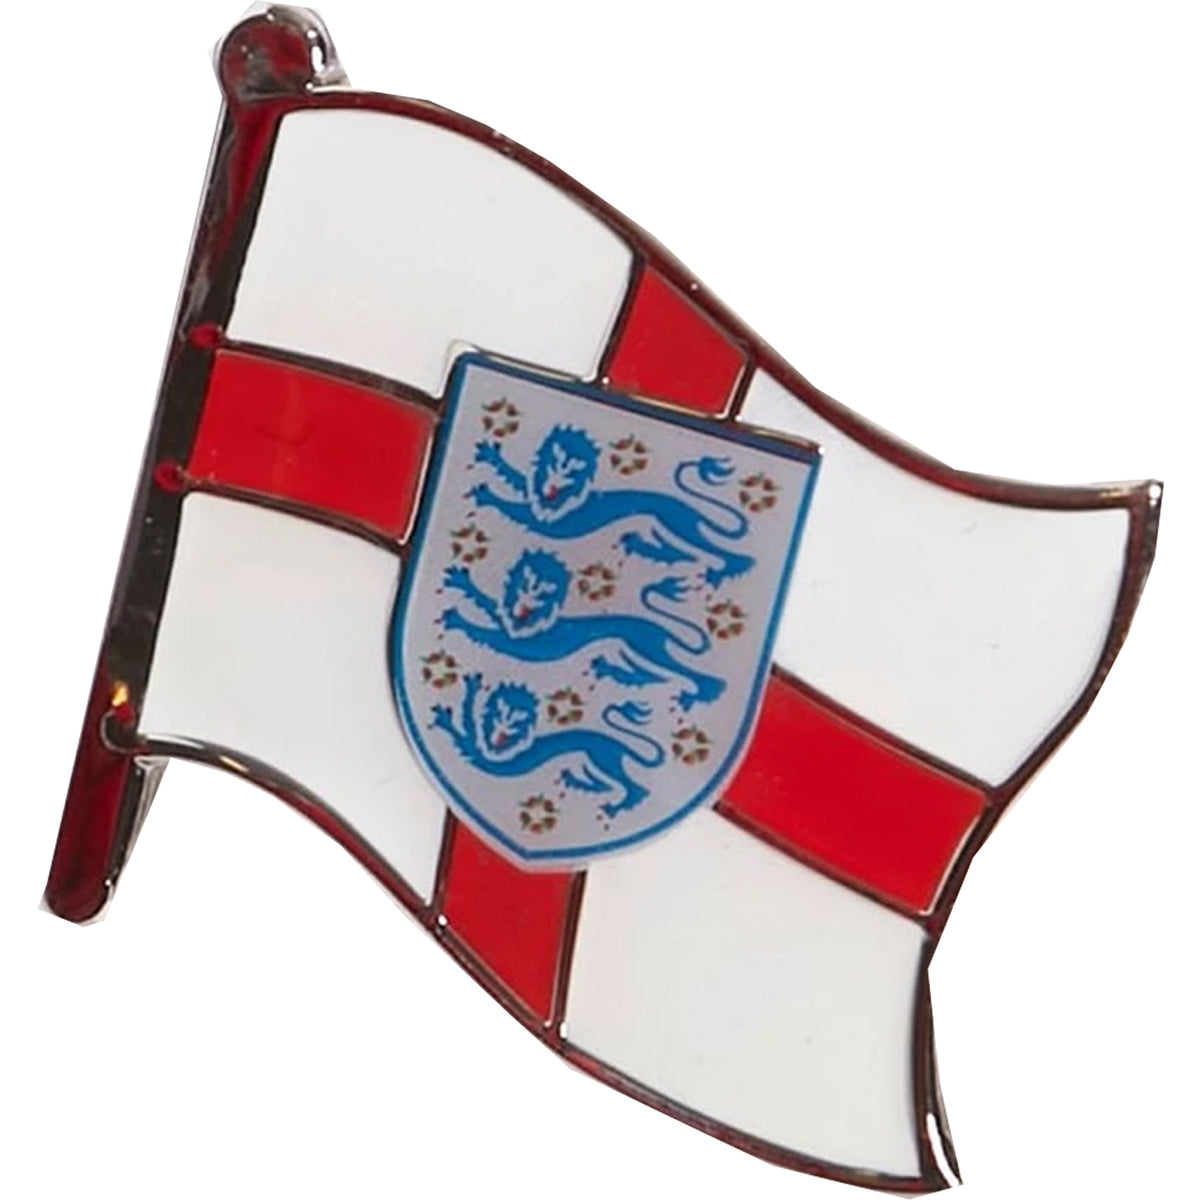 England National Team Flag Pin Badge